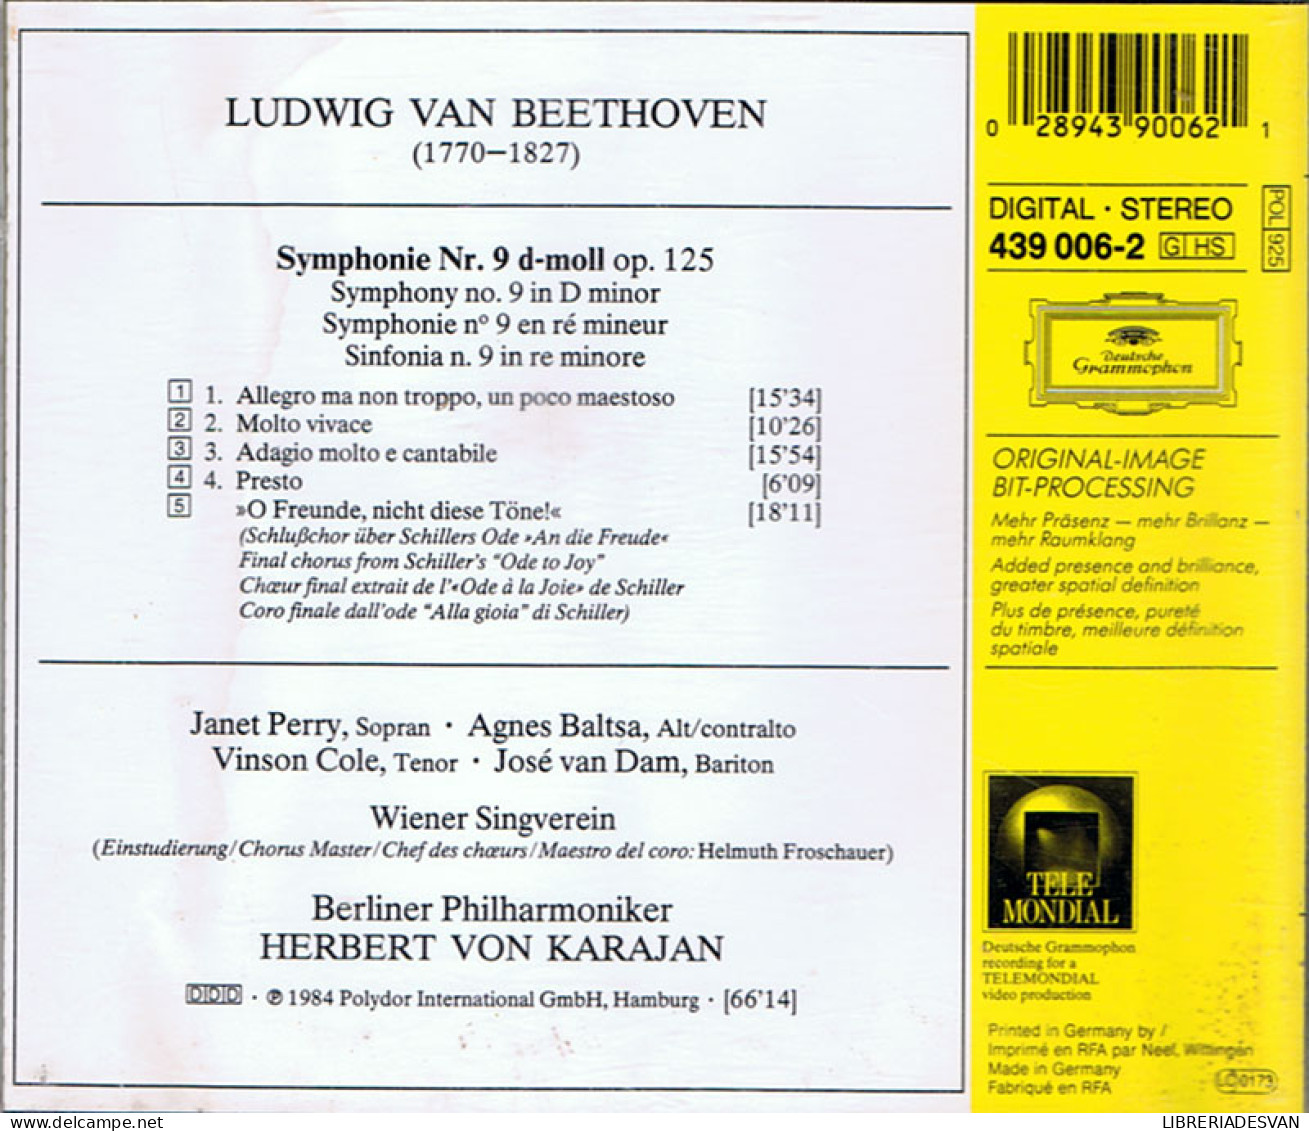 Ludwig Van Beethoven - Symphonie No. 9. CD - Berliner Philharmoniker - Karajan - Classical